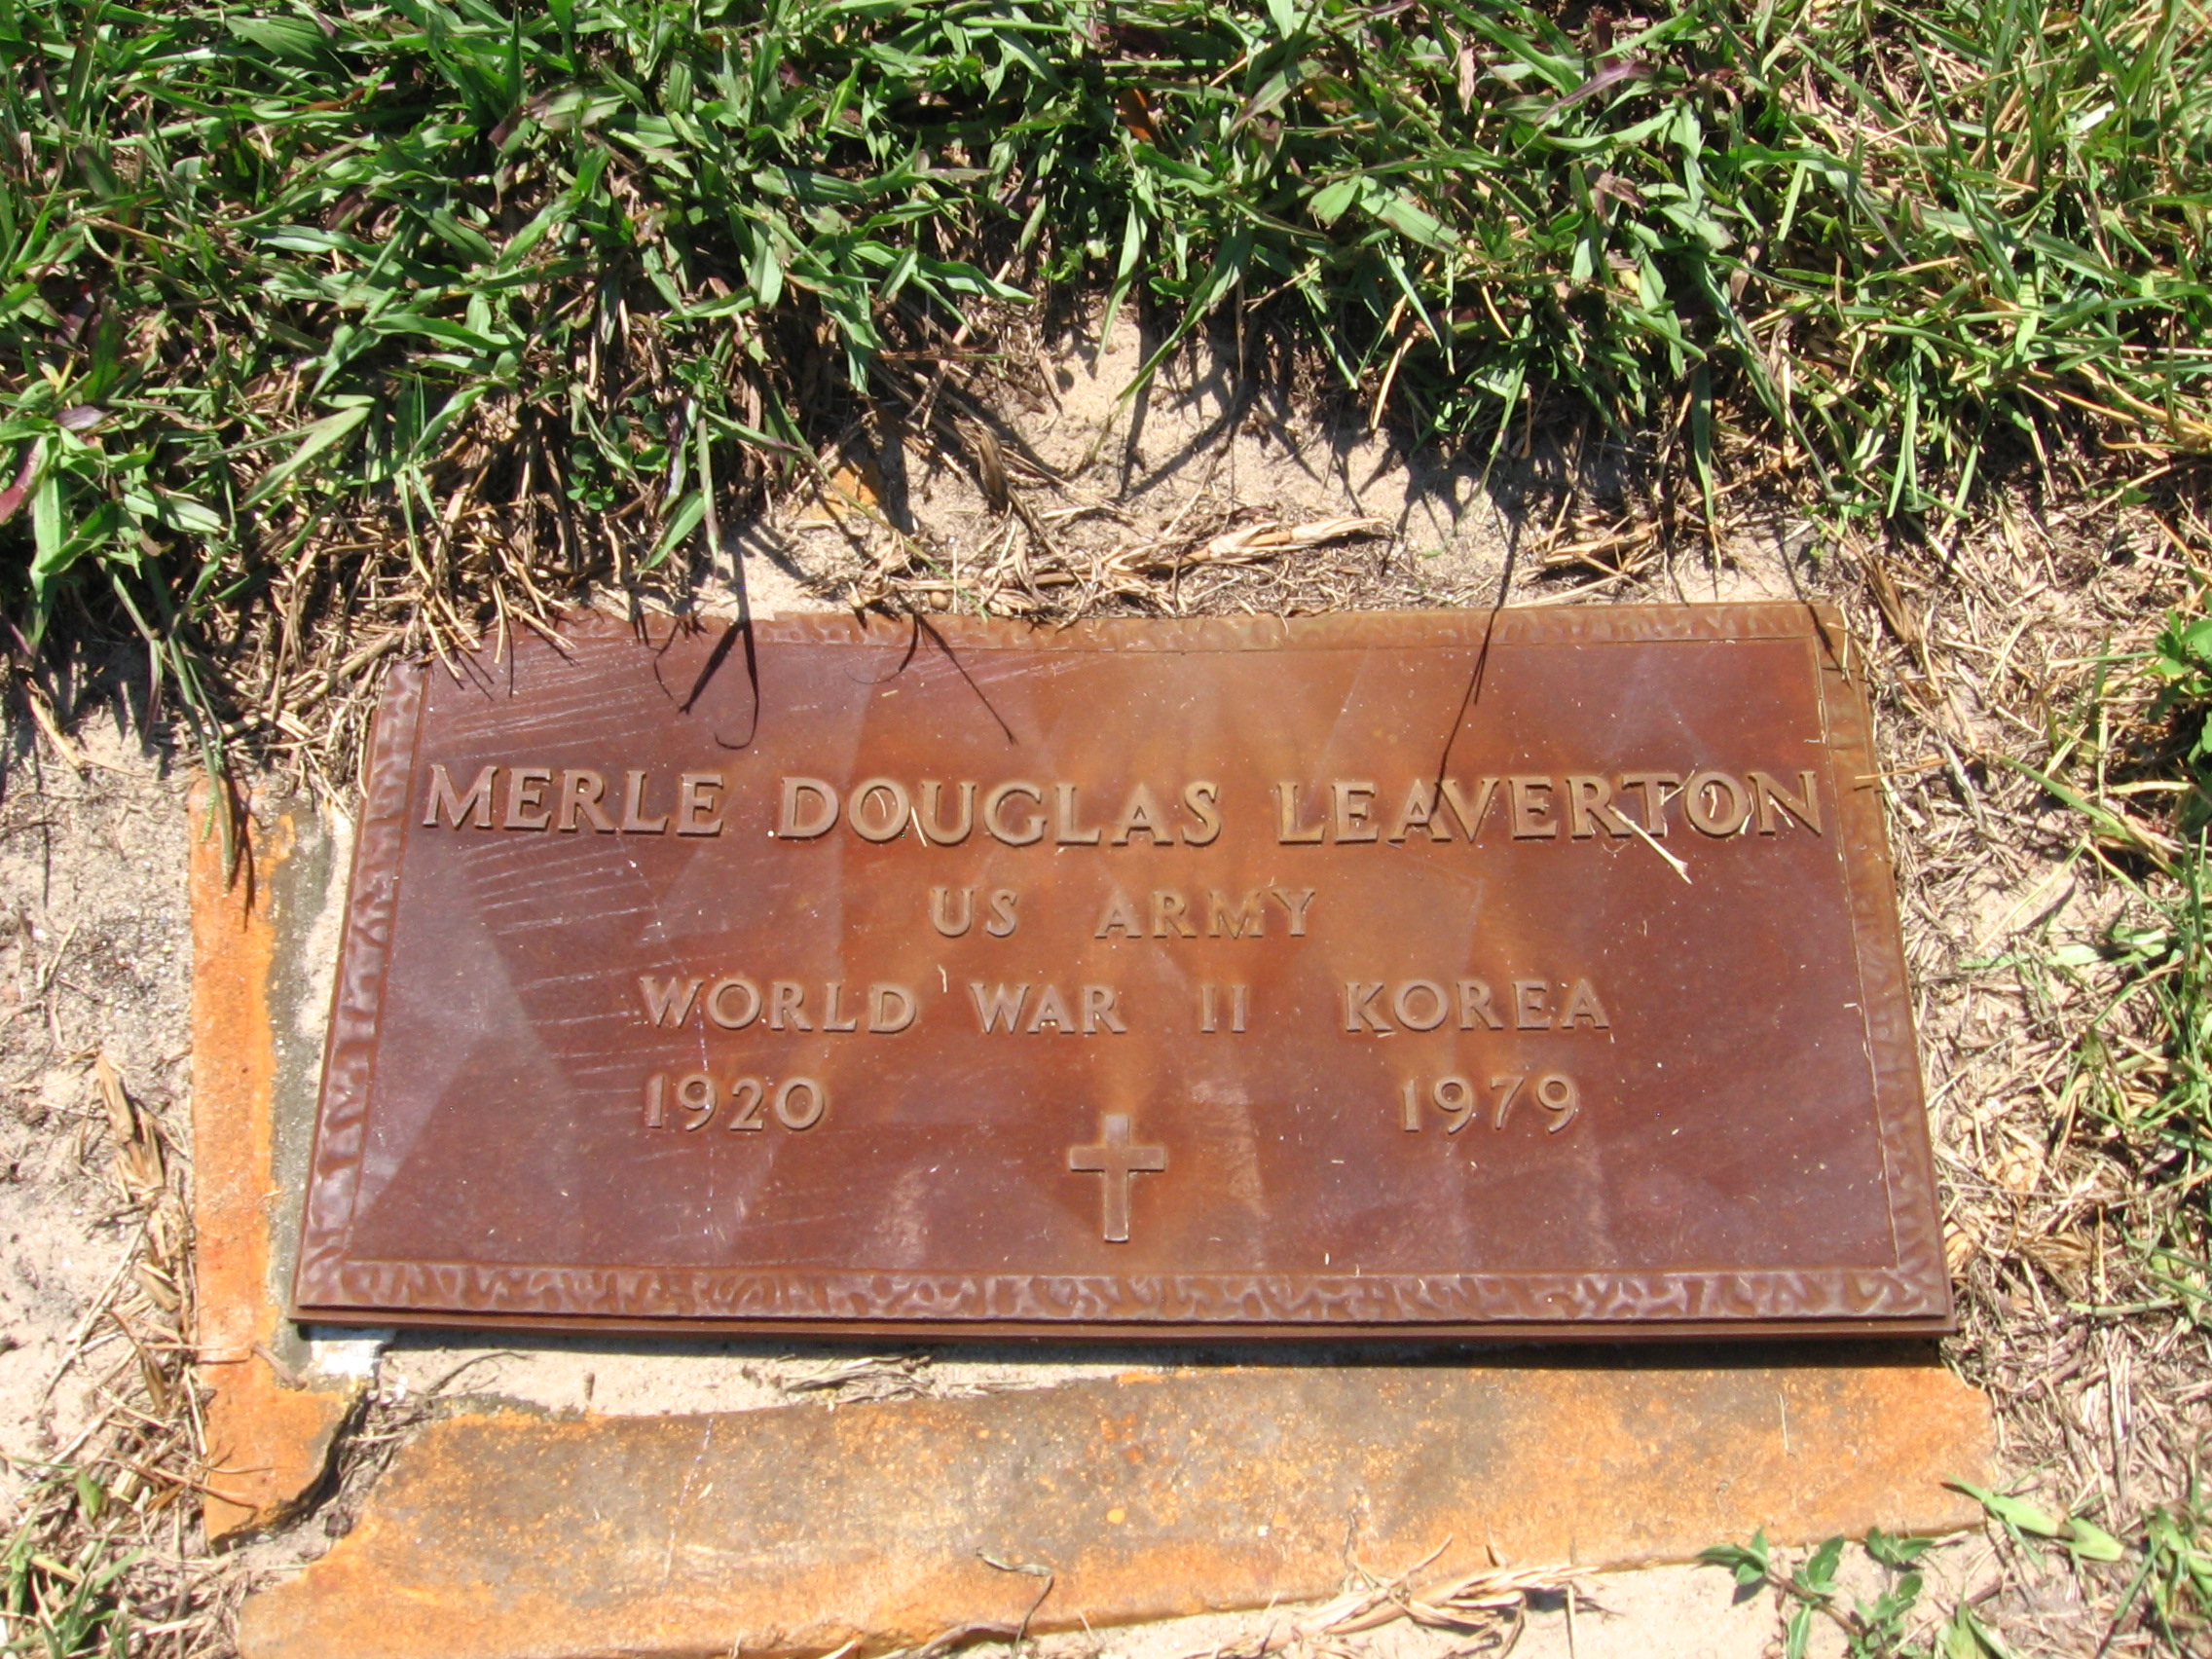 Merle Douglas Leaverton